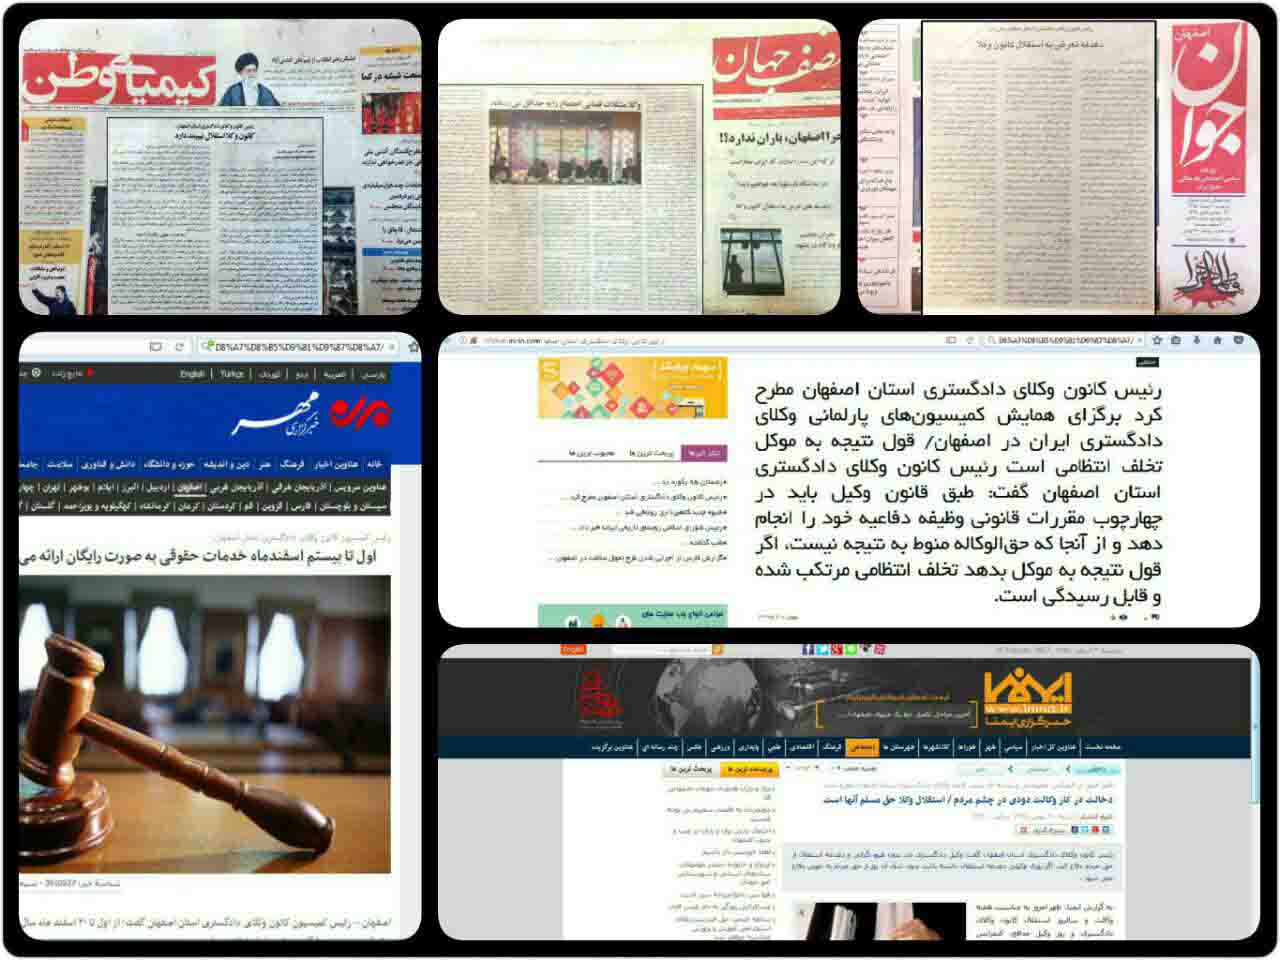 کنفرانس مطبوعاتی رئیس کانون وکلای دادگستری اصفهان در آیینه خبرگزاریها